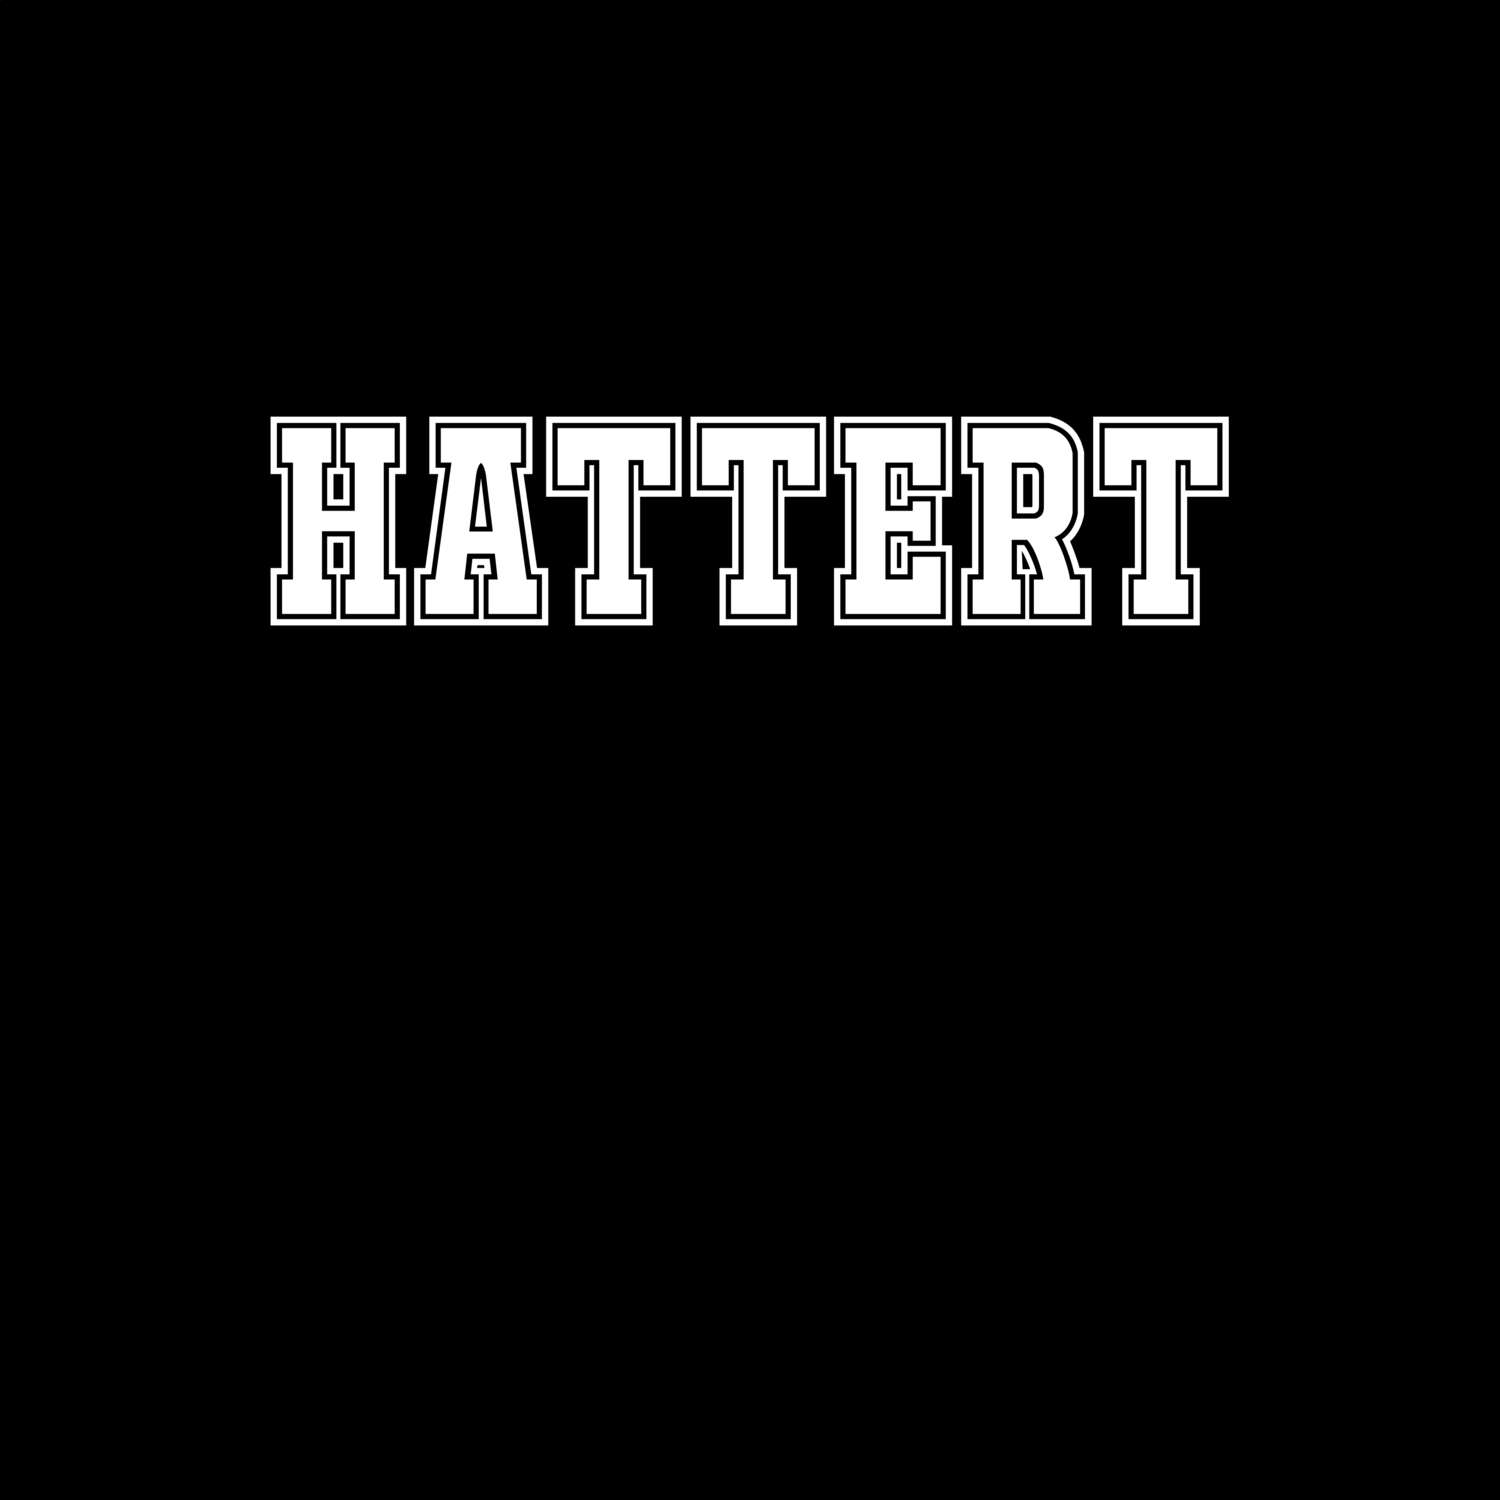 Hattert T-Shirt »Classic«